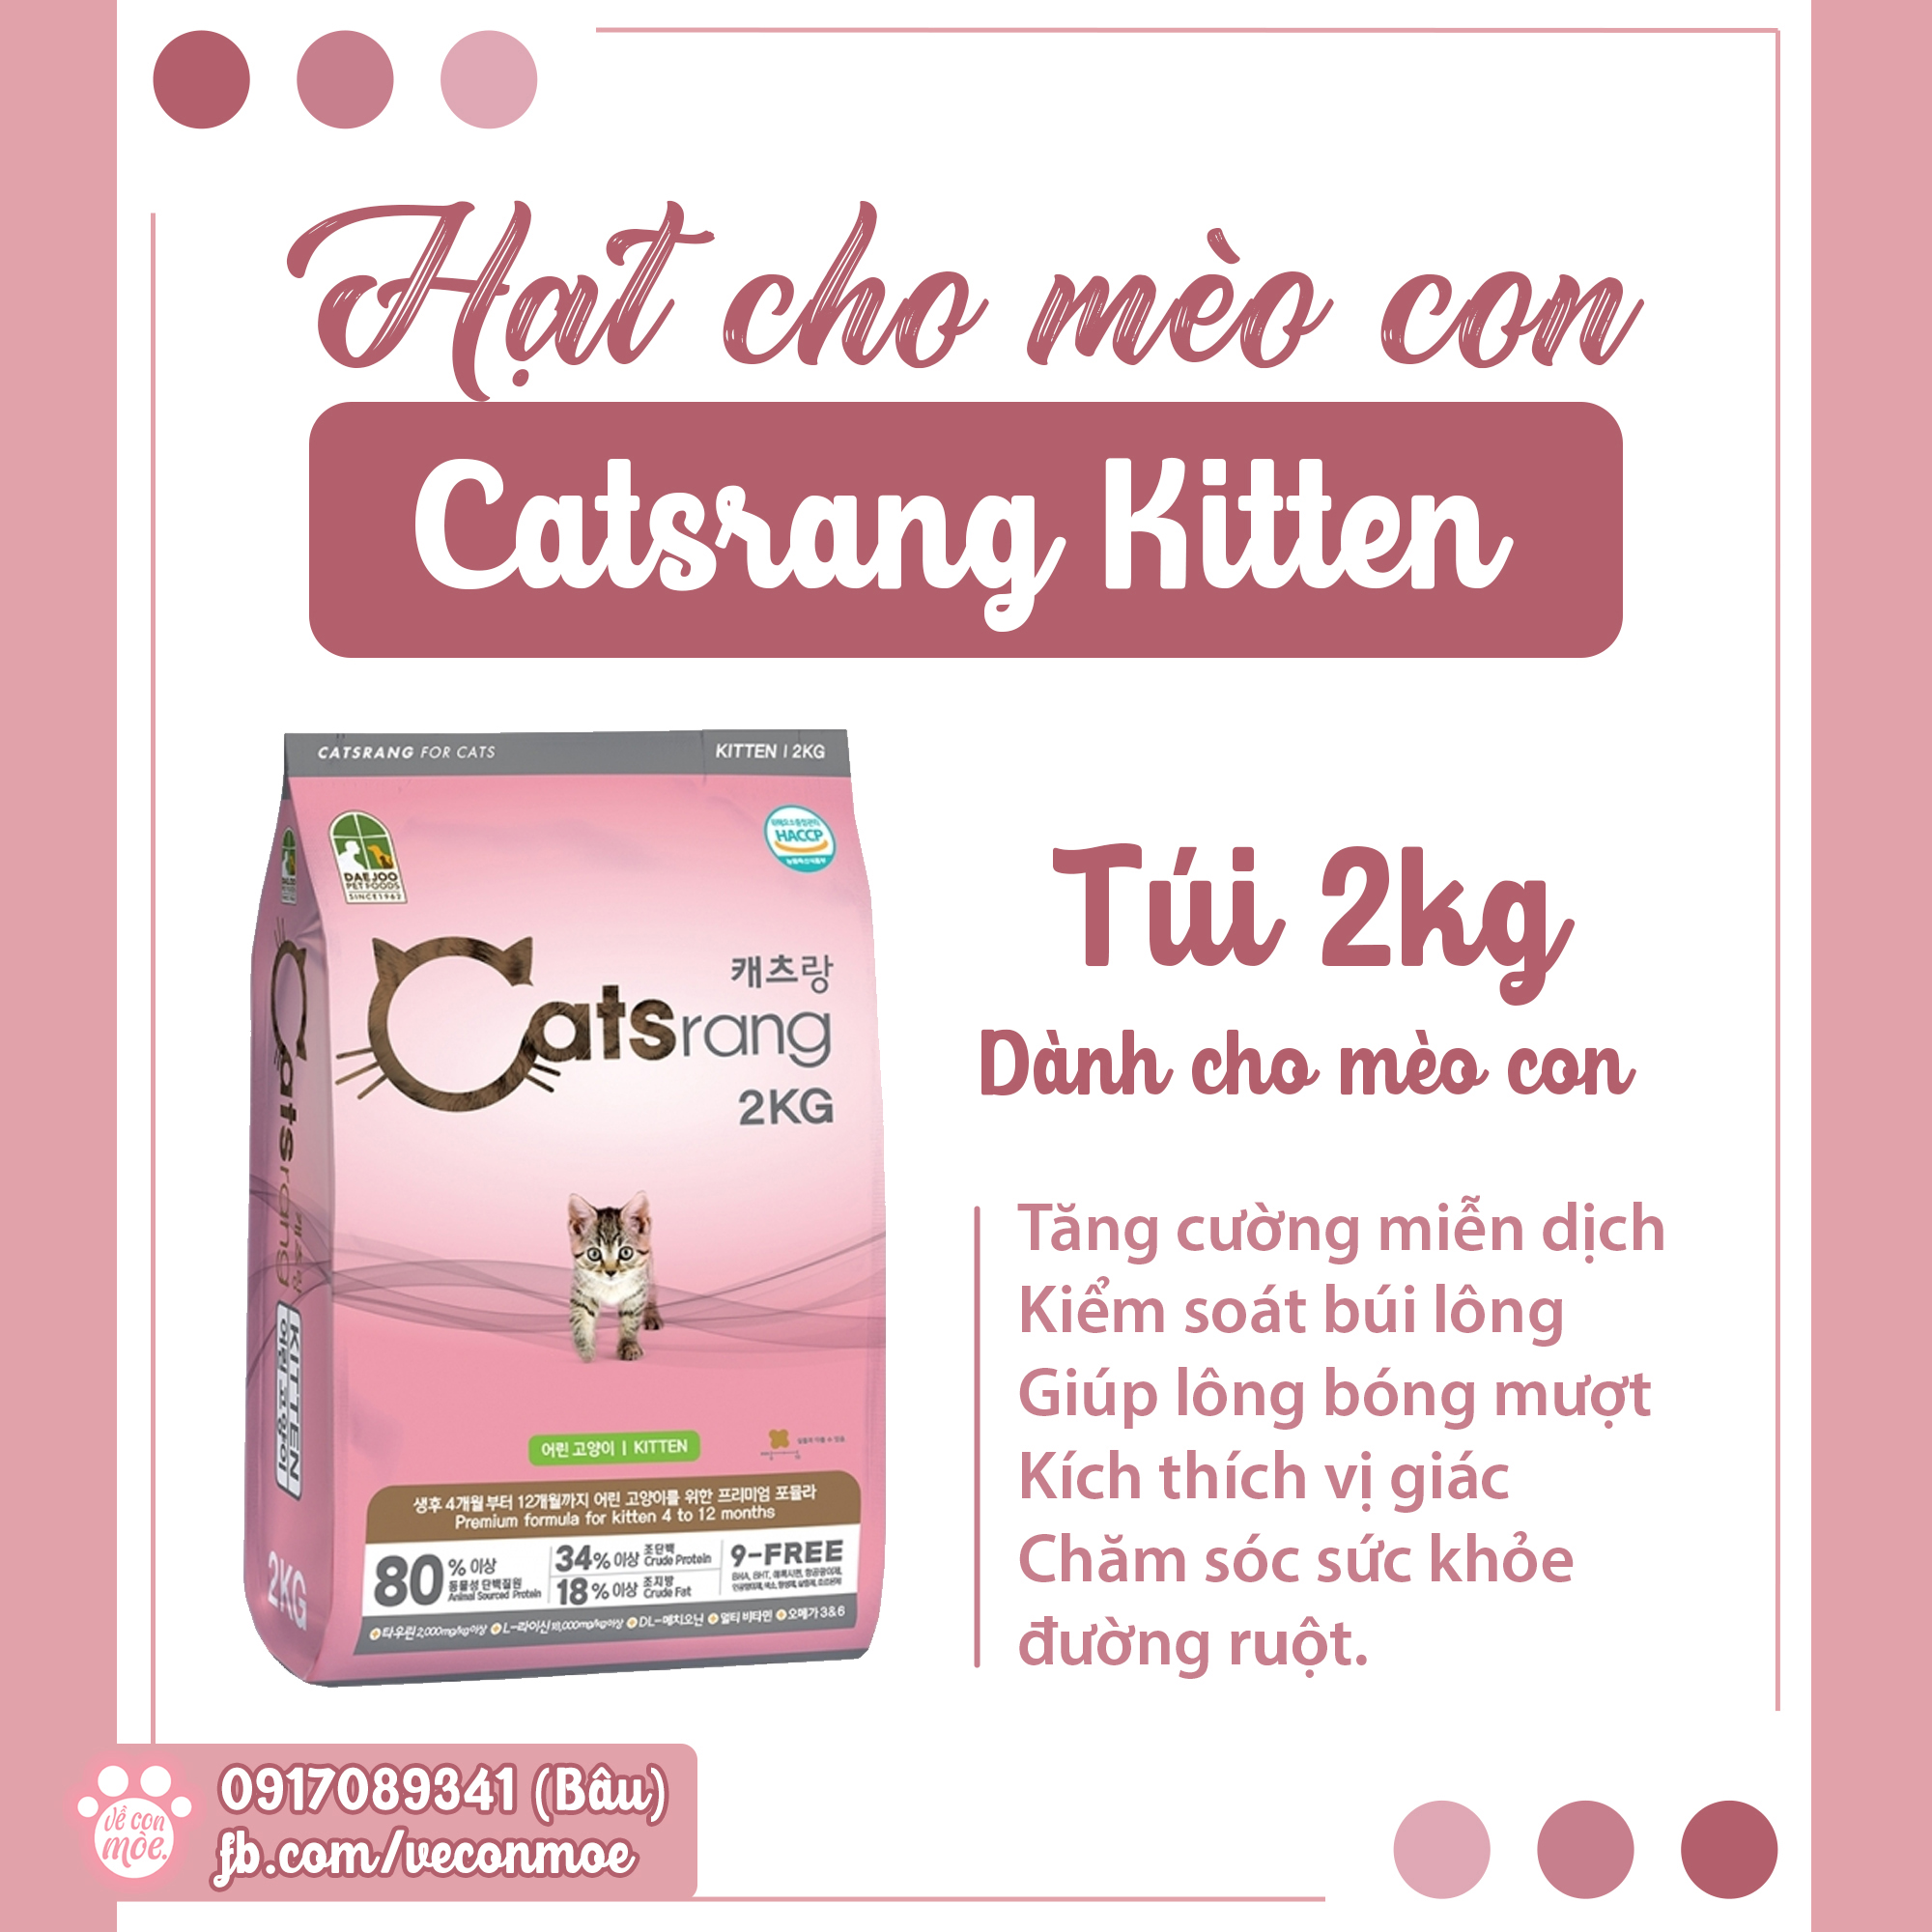 [VCM] Hạt cho mèo con Catsrang Kitten 2kg